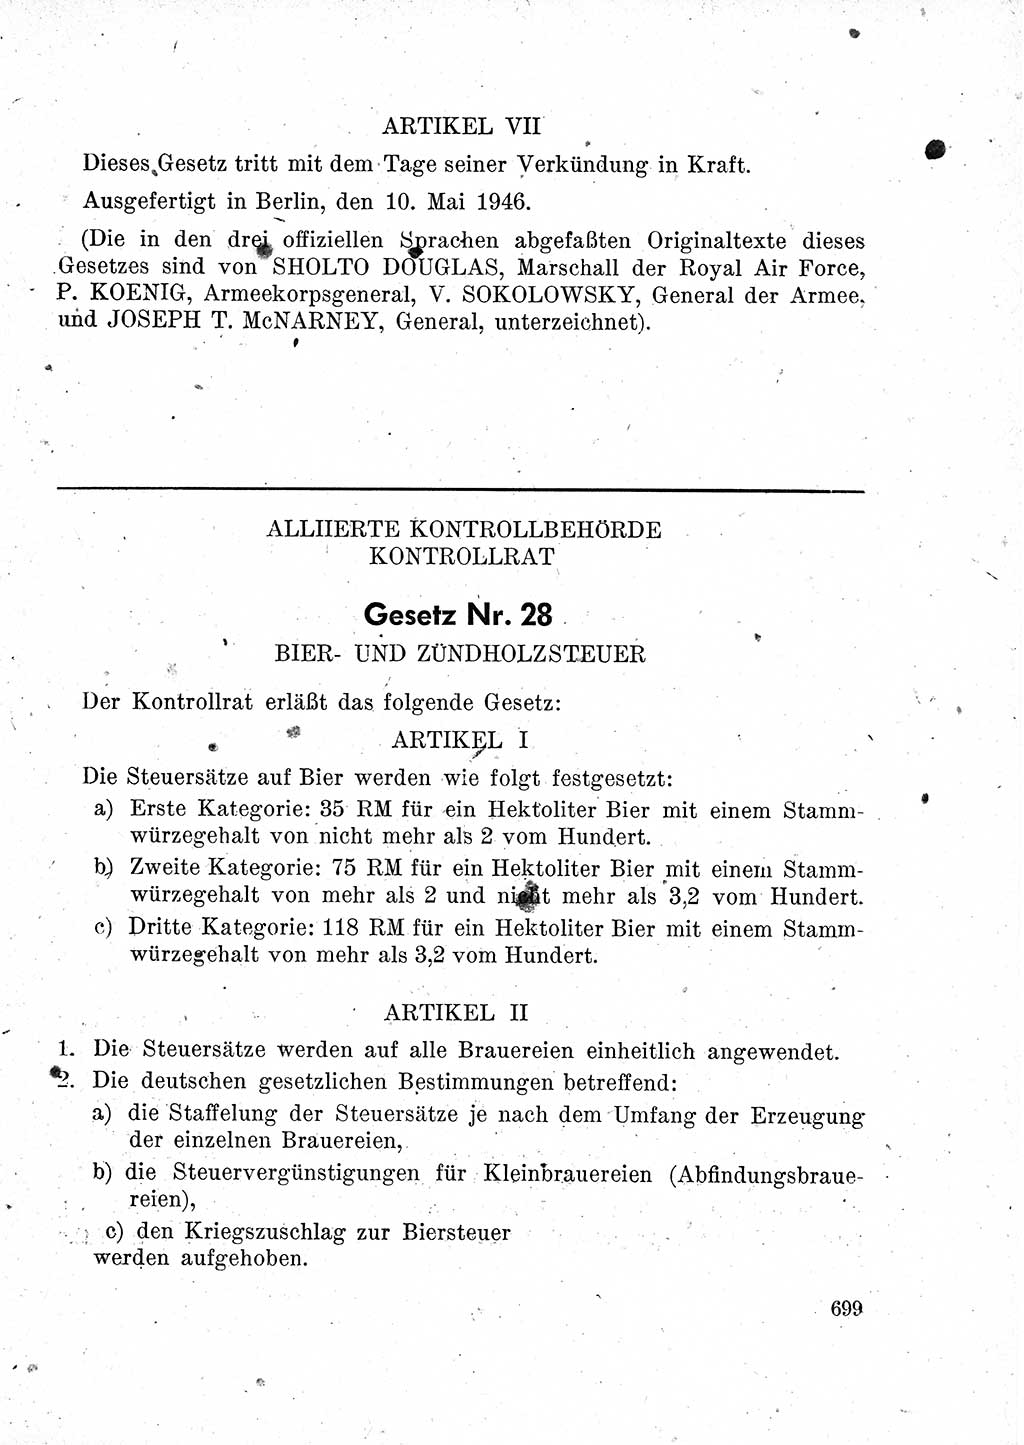 Das Recht der Besatzungsmacht (Deutschland), Proklamationen, Deklerationen, Verordnungen, Gesetze und Bekanntmachungen 1947, Seite 699 (R. Bes. Dtl. 1947, S. 699)